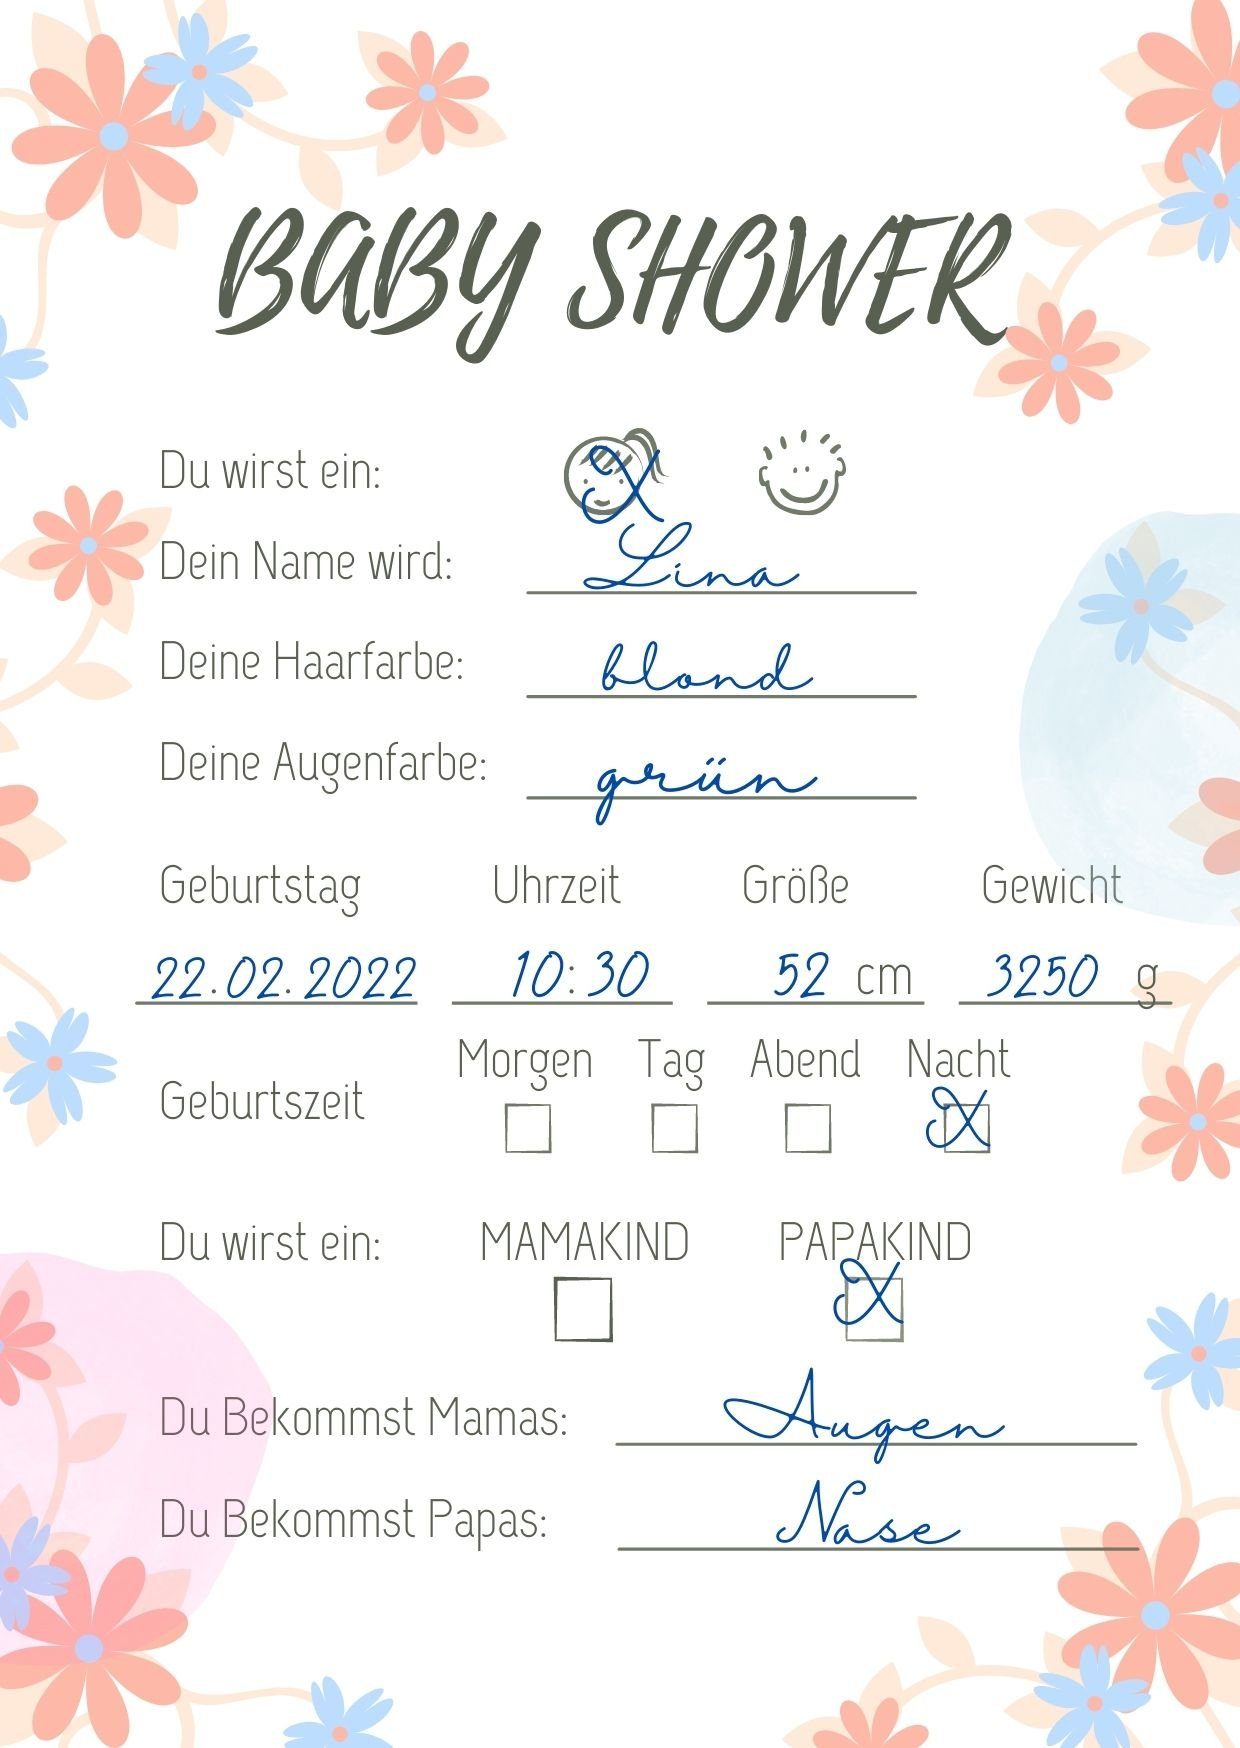 EMI & SAM Spiel, EMI&SAM Babyparty Wunschkarten Karten Junge & Mädchen Wünsche Baby Shower 20 St, Blumen Orange